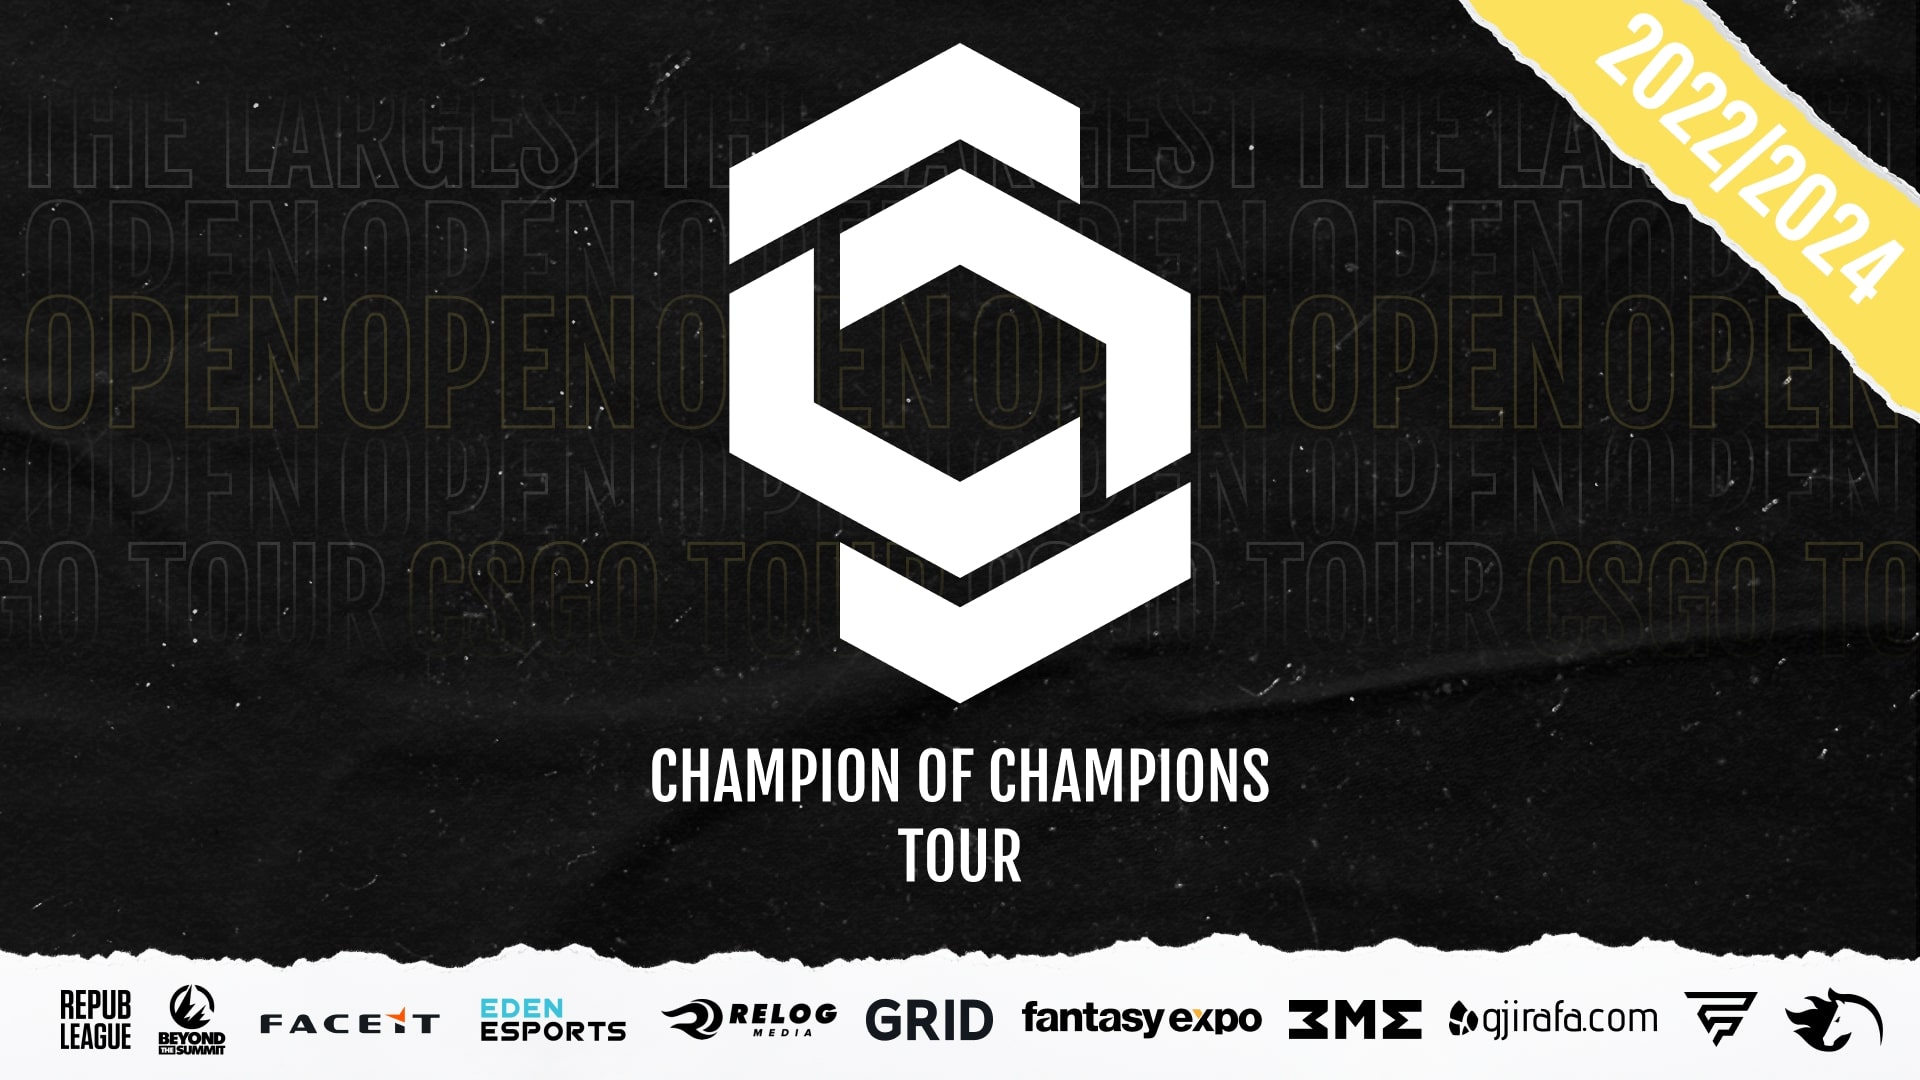 Champion of Champions Tour: Prizepool přes 75 milionů korun, REPUBLEAGUE bude středoevropský partner